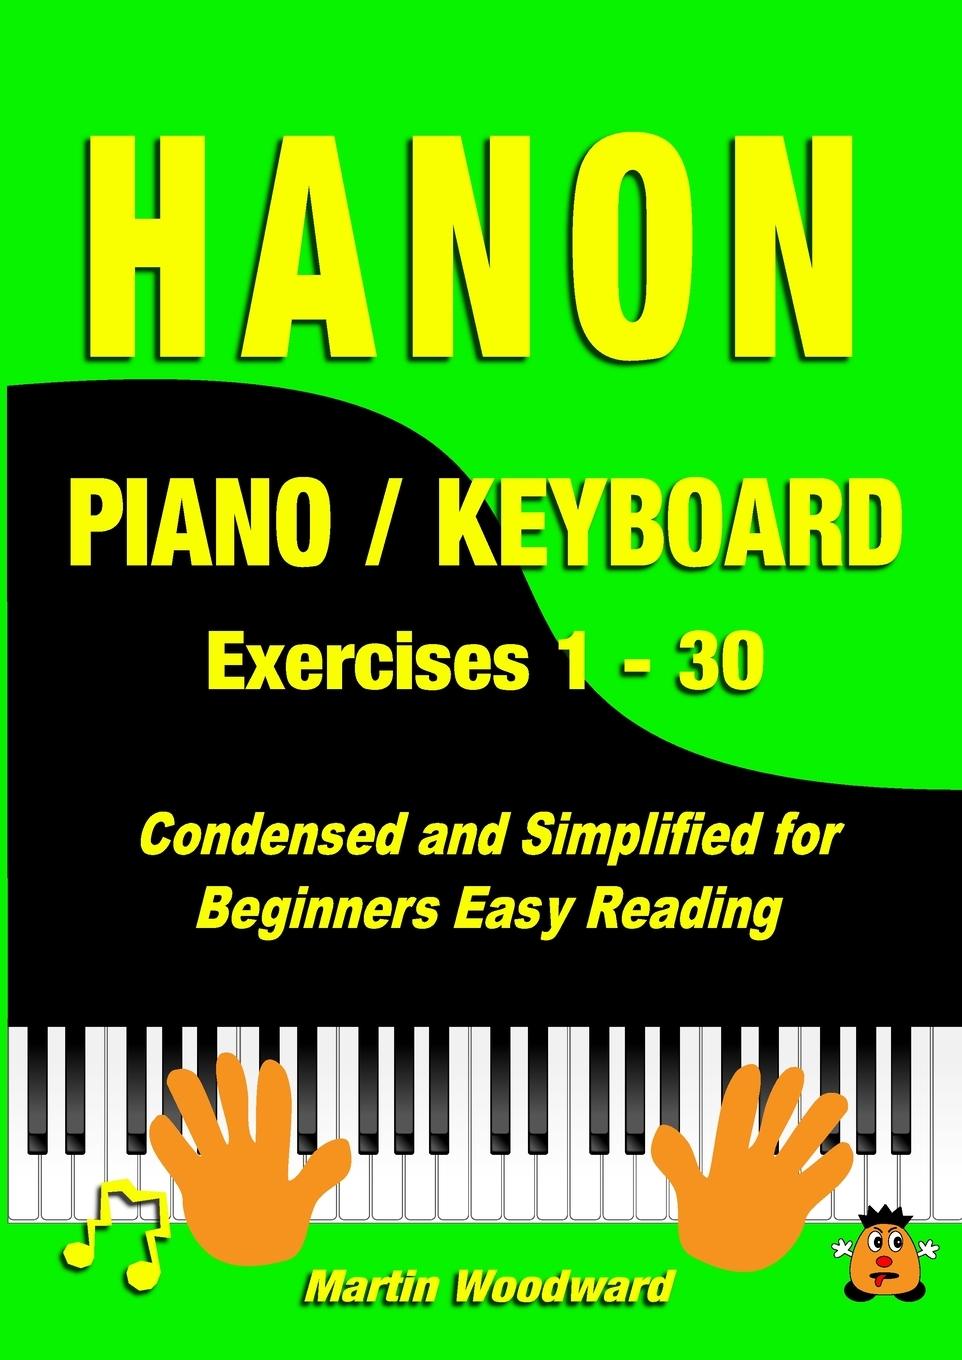 Carte Hanon Piano / Keyboard Exercises 1 - 30 